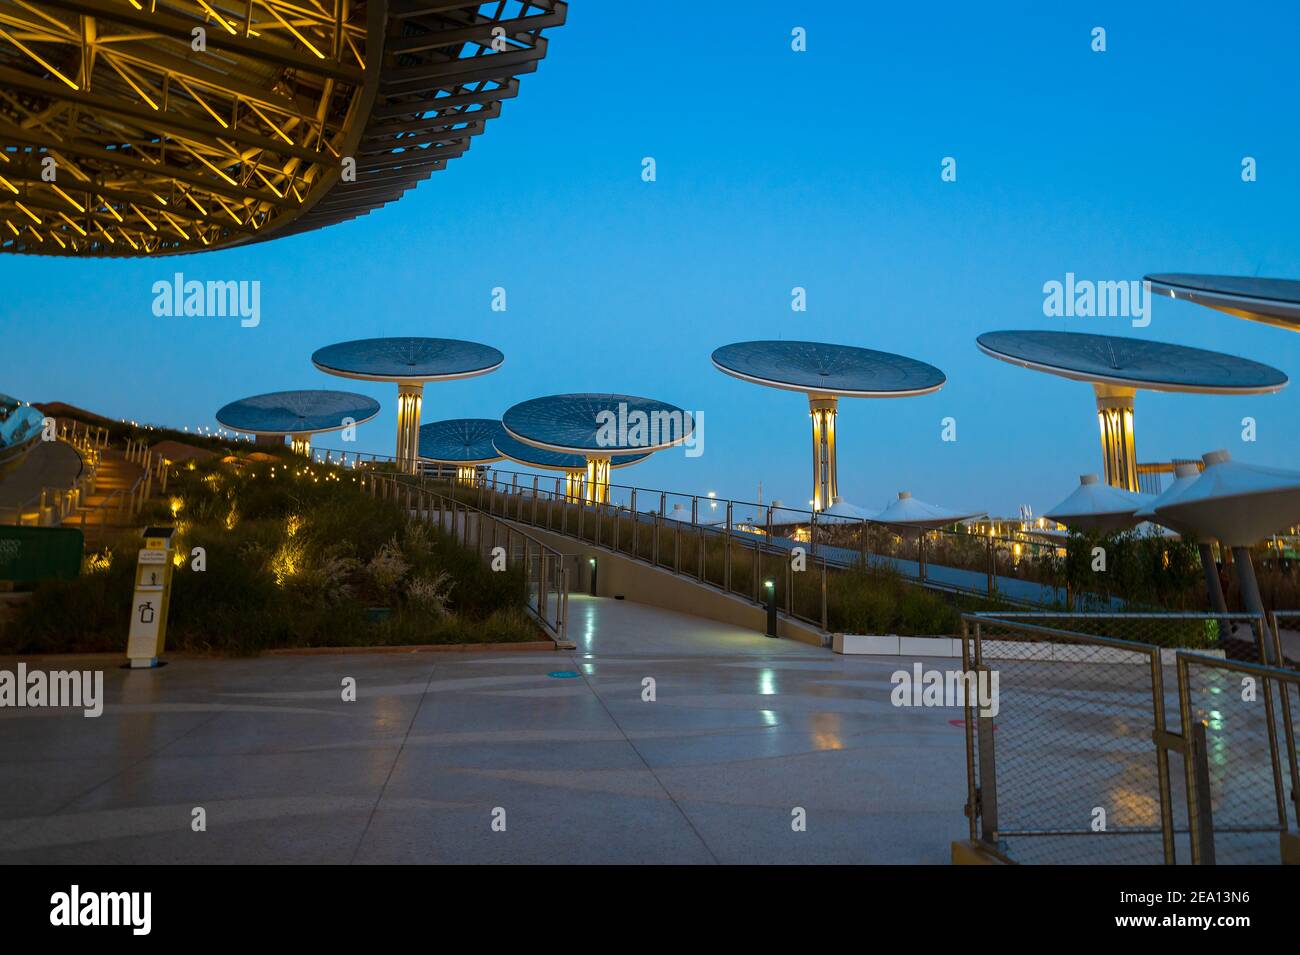 Dubaï, Émirats arabes Unis - 4 février 2020 : le Terra Sustainability Pavilion de l'EXPO 2020 construit pour l'EXPO 2020 qui se tiendra en 2021 dans le Banque D'Images